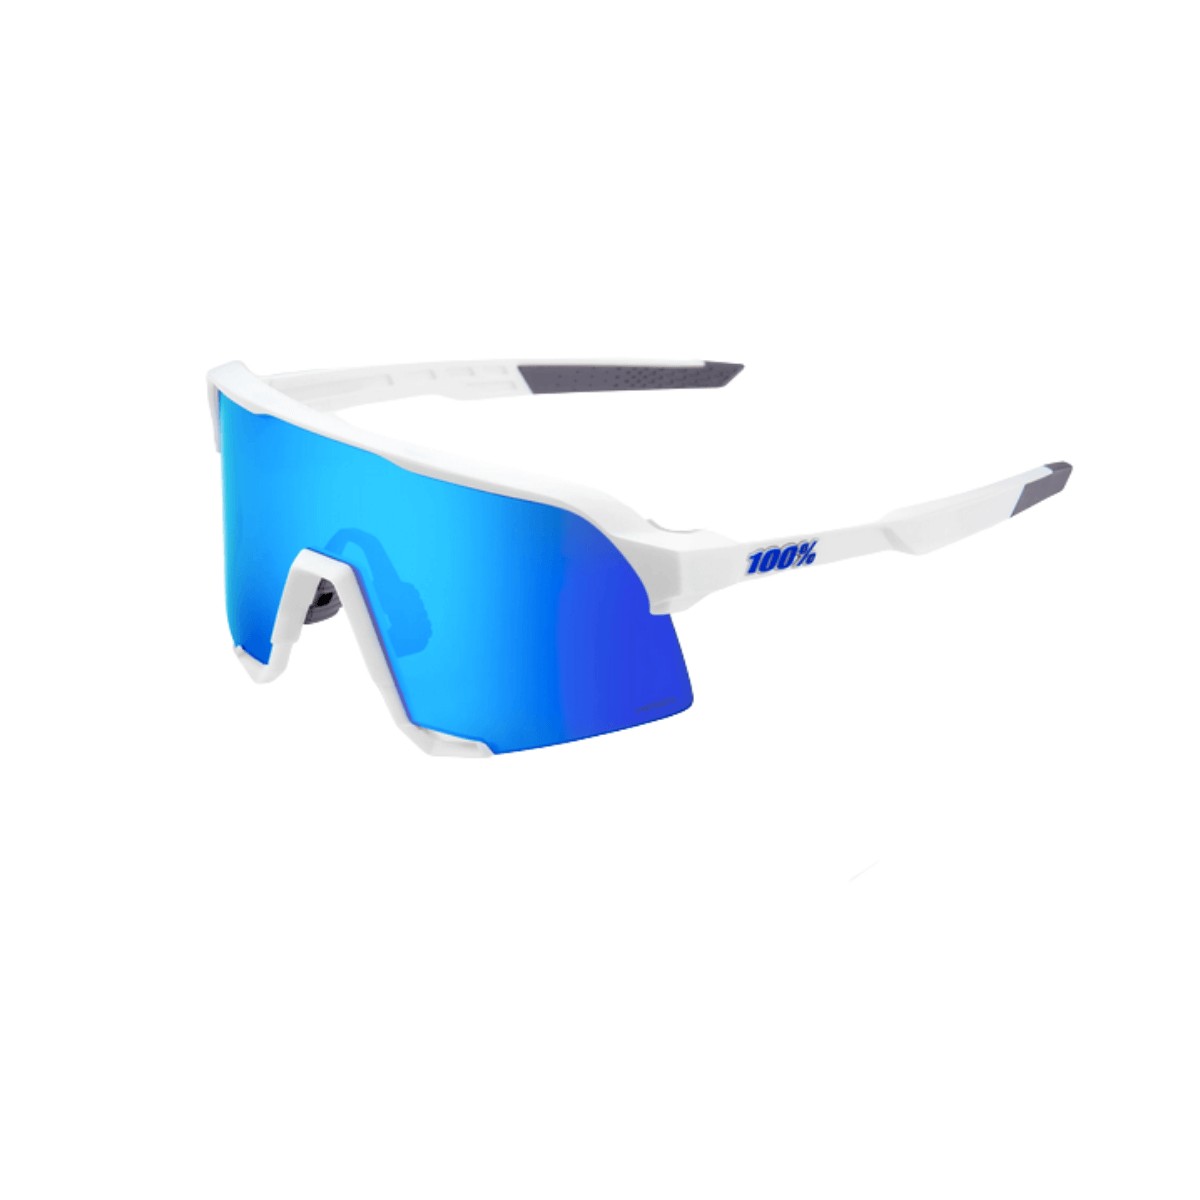 OBJ und günstig Kaufen-Brille 100% S3 Hyper Blue Multilayer Spiegelobjektiv. Brille 100% S3 Hyper Blue Multilayer Spiegelobjektiv <![CDATA[Brille 100% S3 Hyper Blue Multilayer Spiegelobjektiv Die 100% S3-Brille verleiht dem Fahrer eine subtil geglättete Winkligkeit und behält